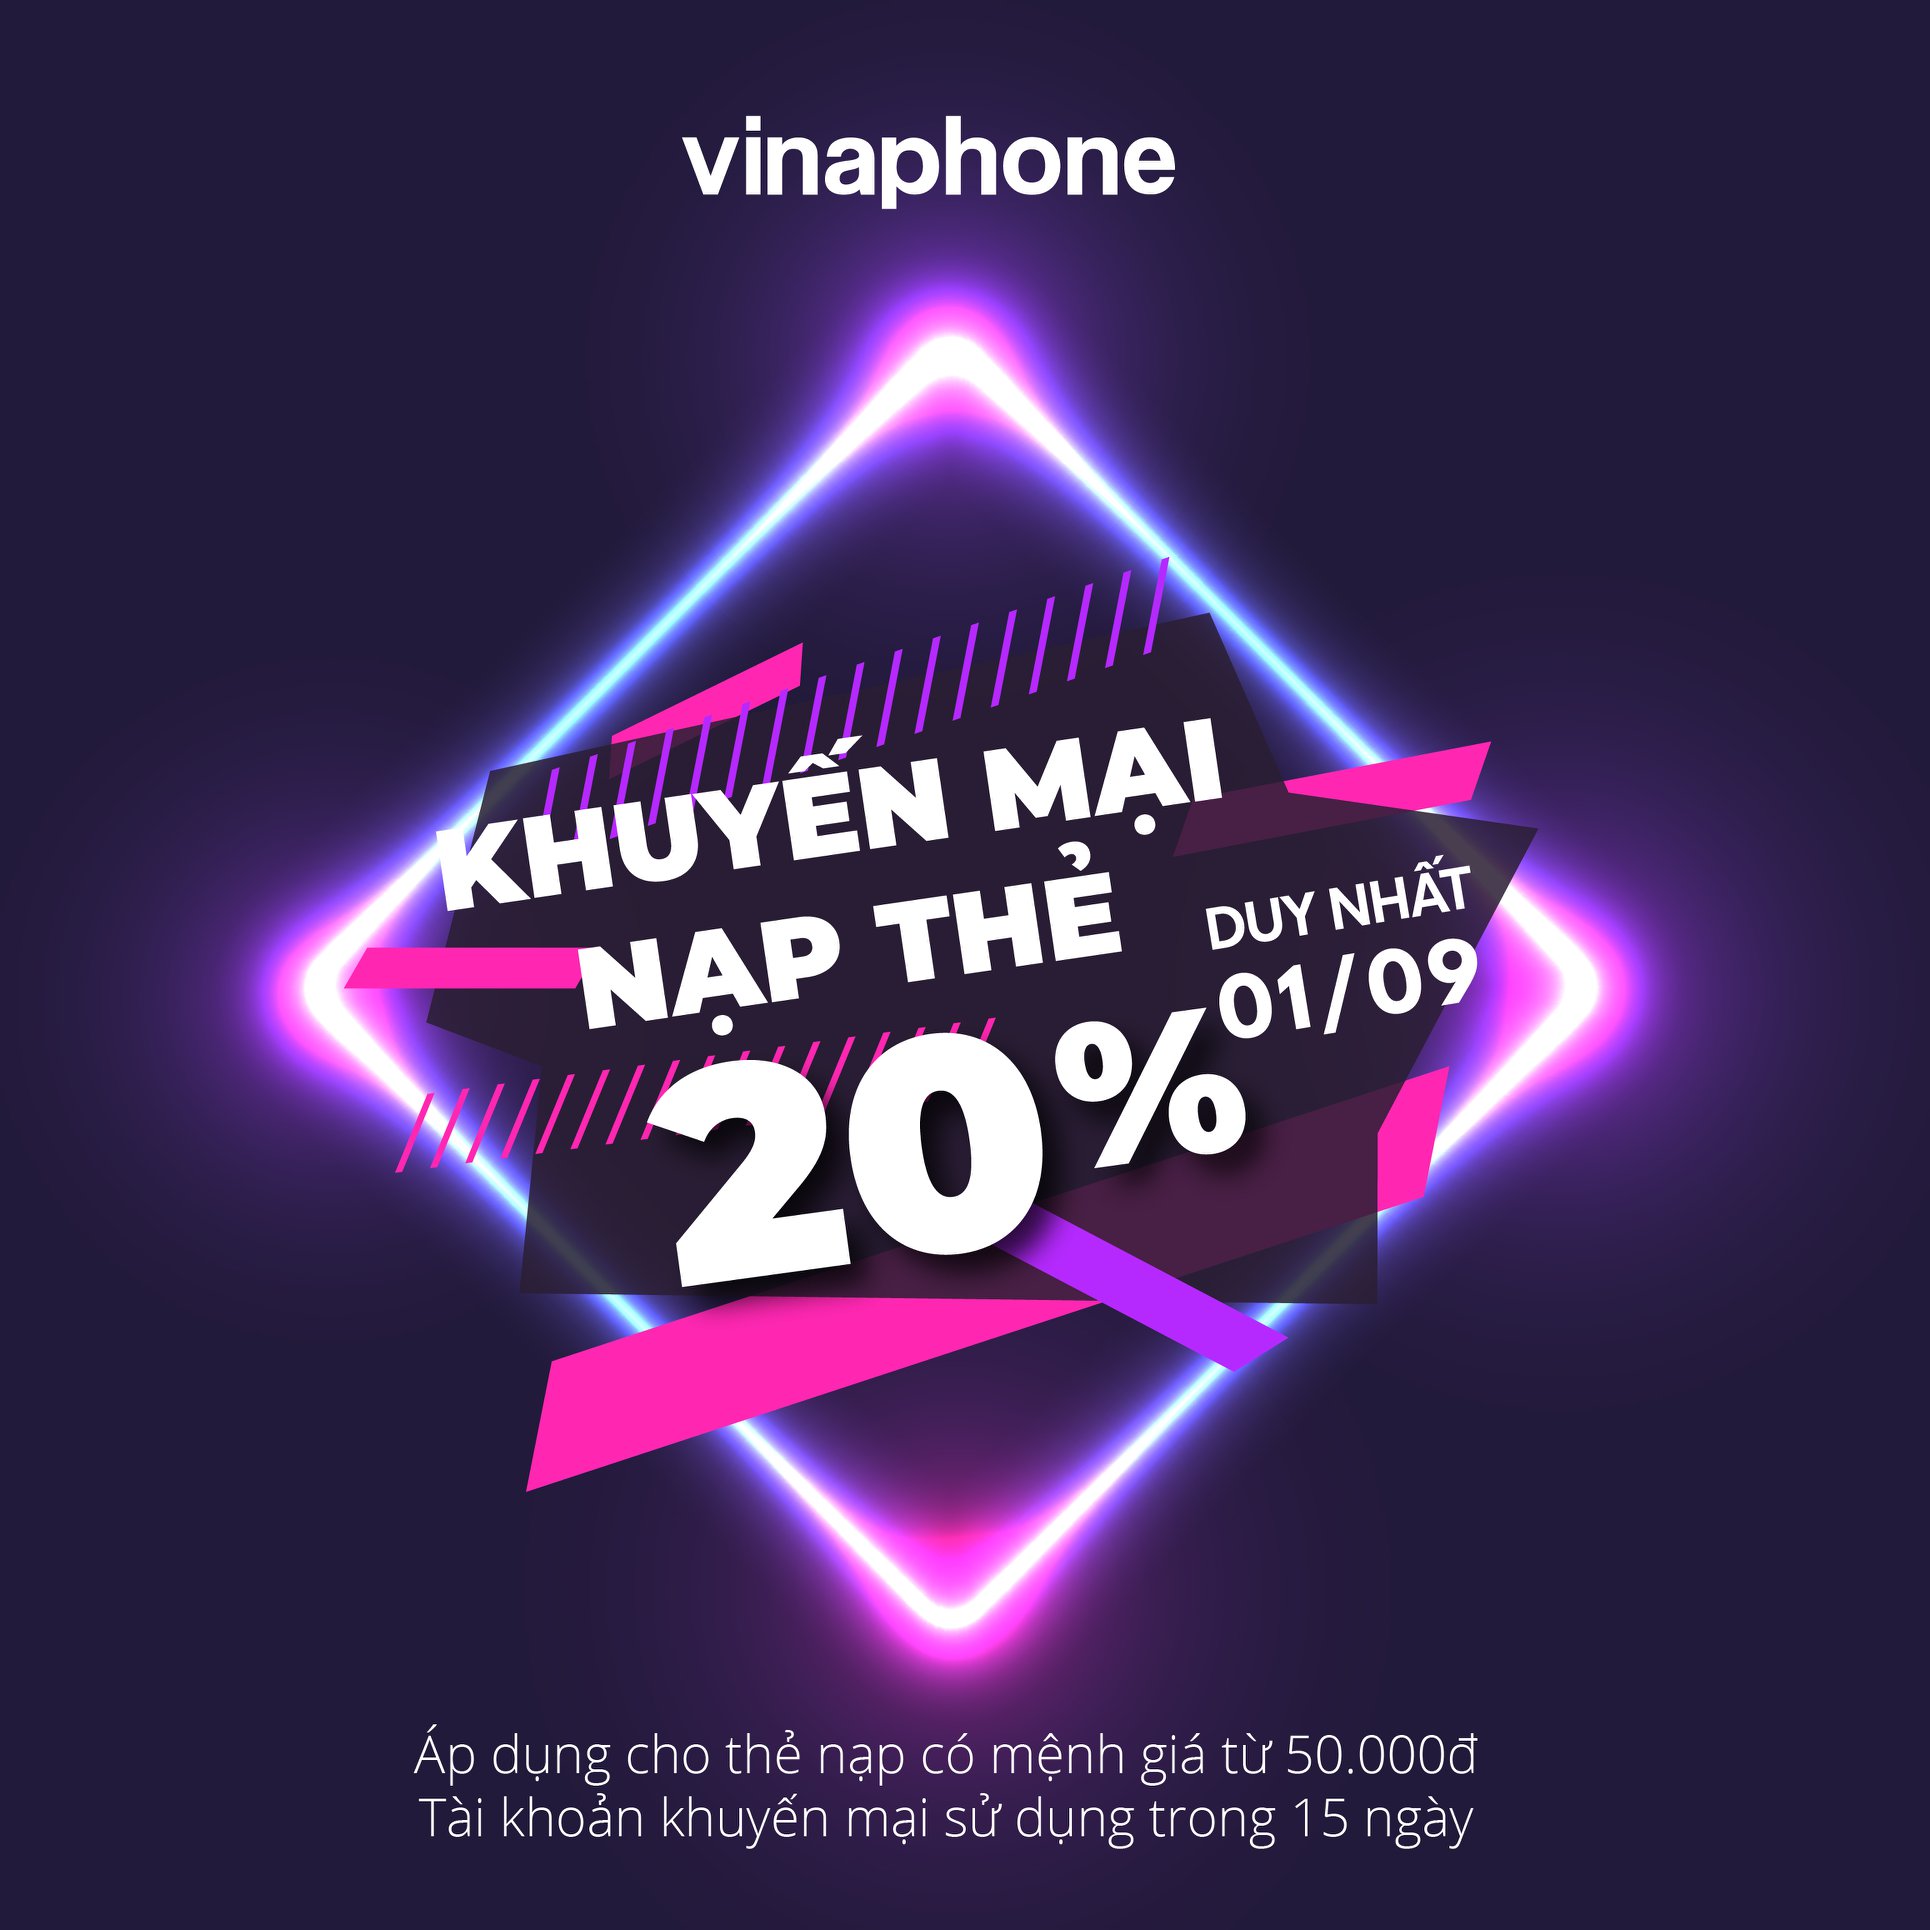 Vinaphone khuyến mãi ngày 1/9/2020 tặng 20% giá trị thẻ nạp mệnh giá 50.000đ trở lên